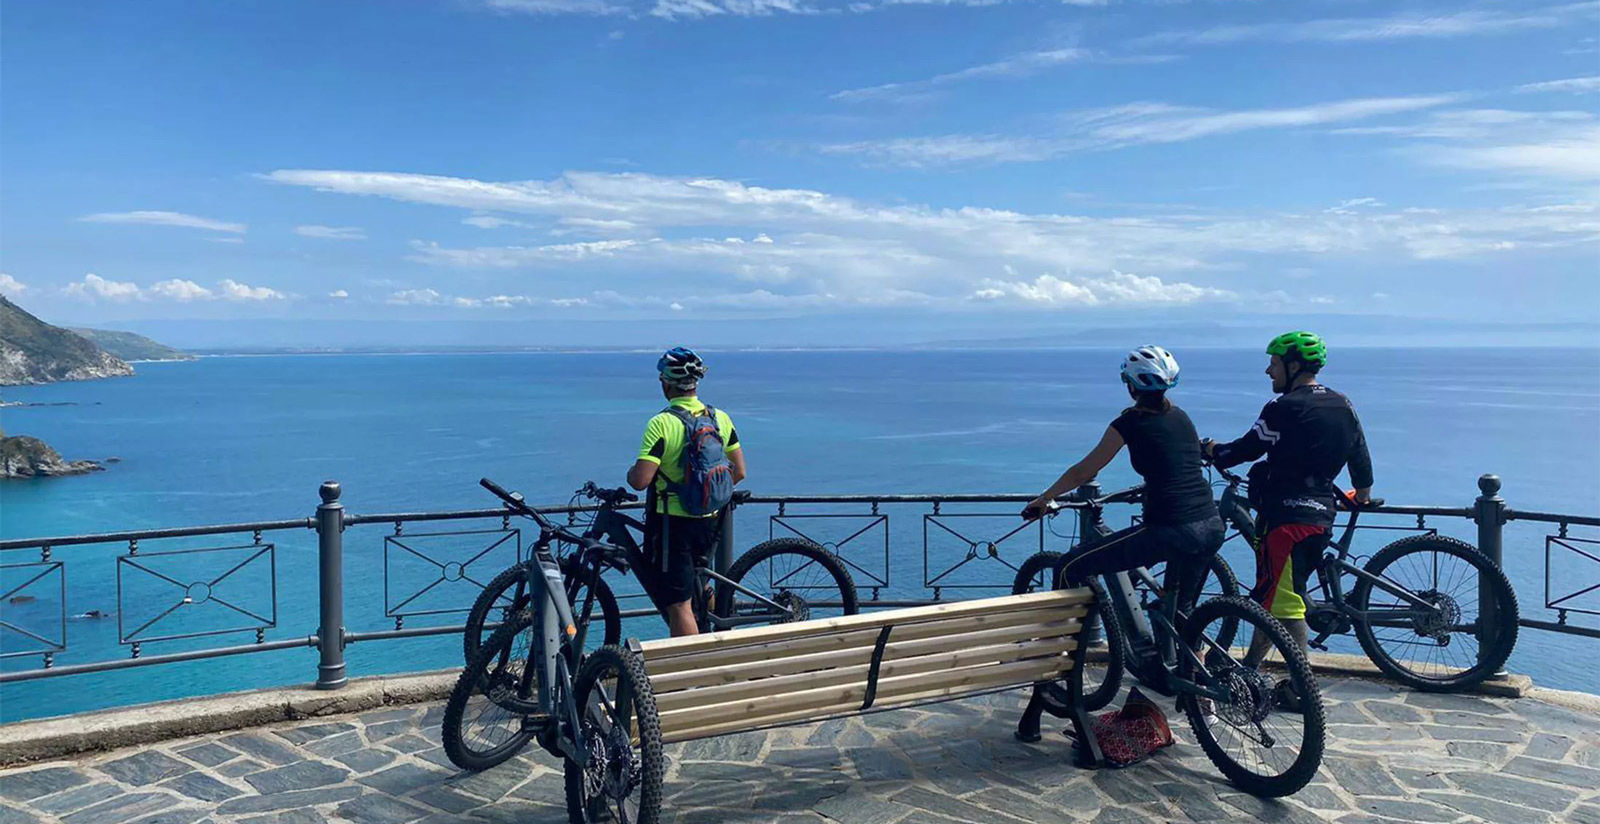 Capovaticano Resort - E-bikes and excursions 21